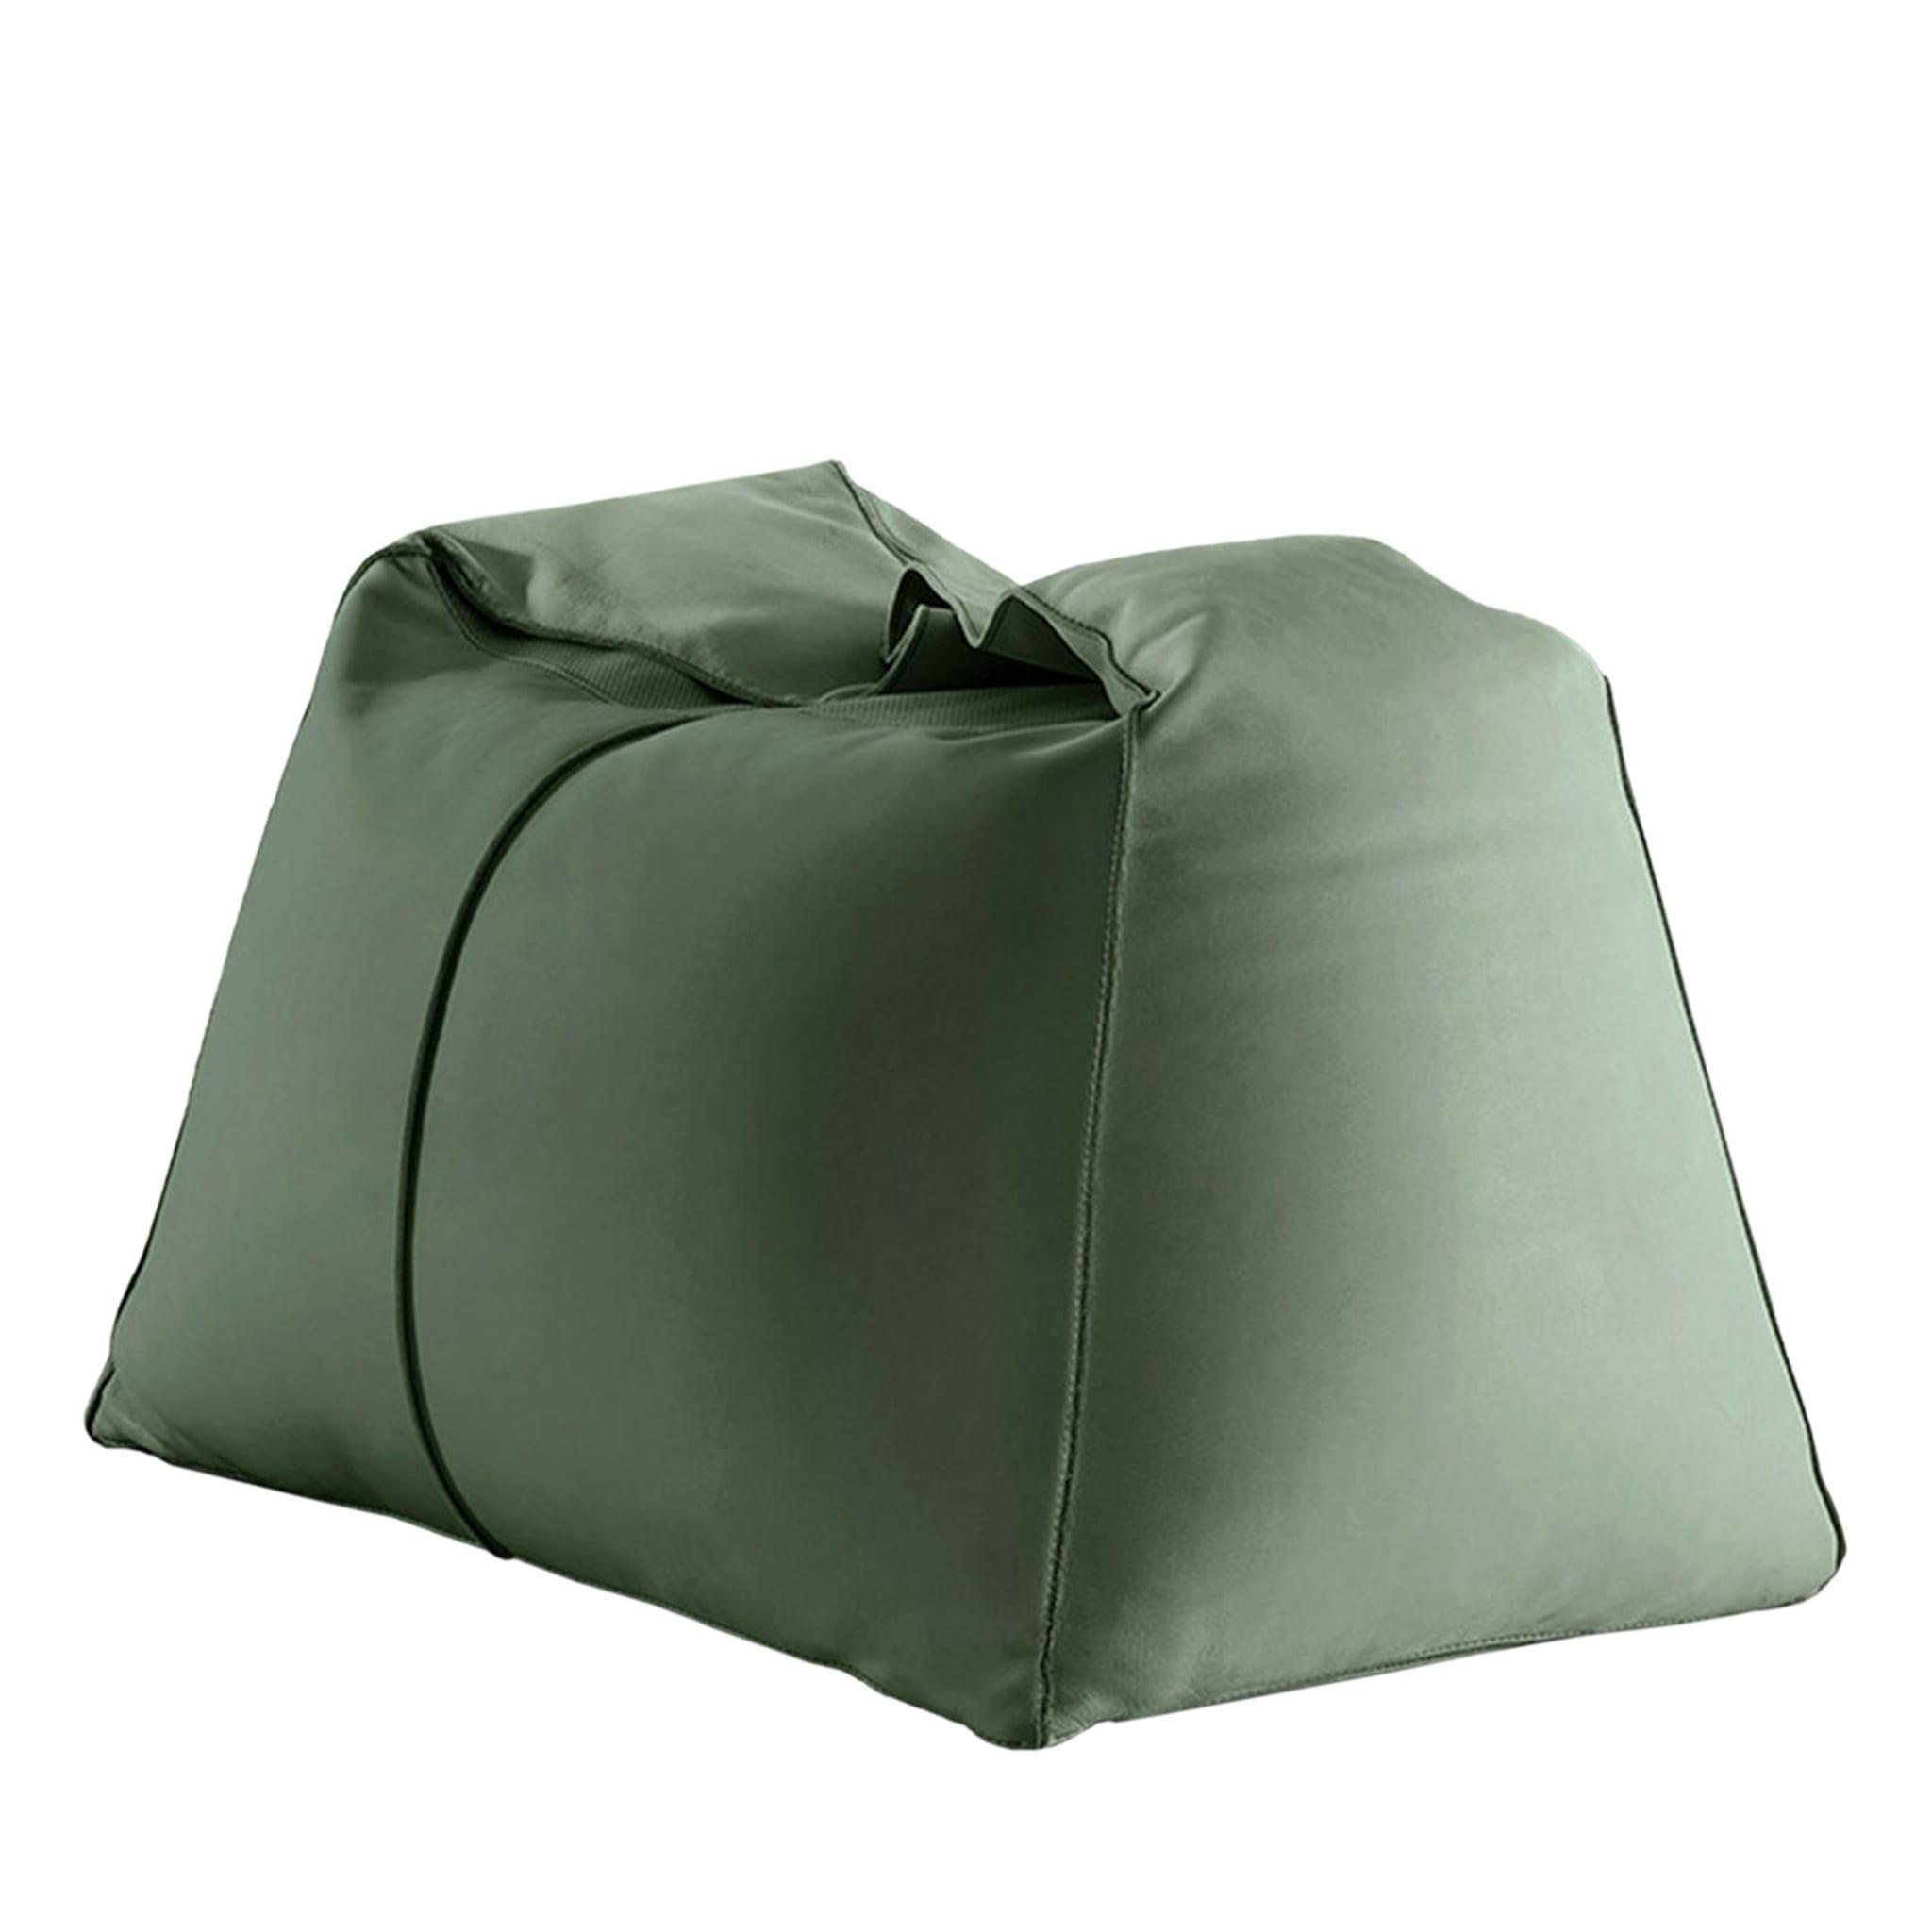 Green Bean Bag Chairs